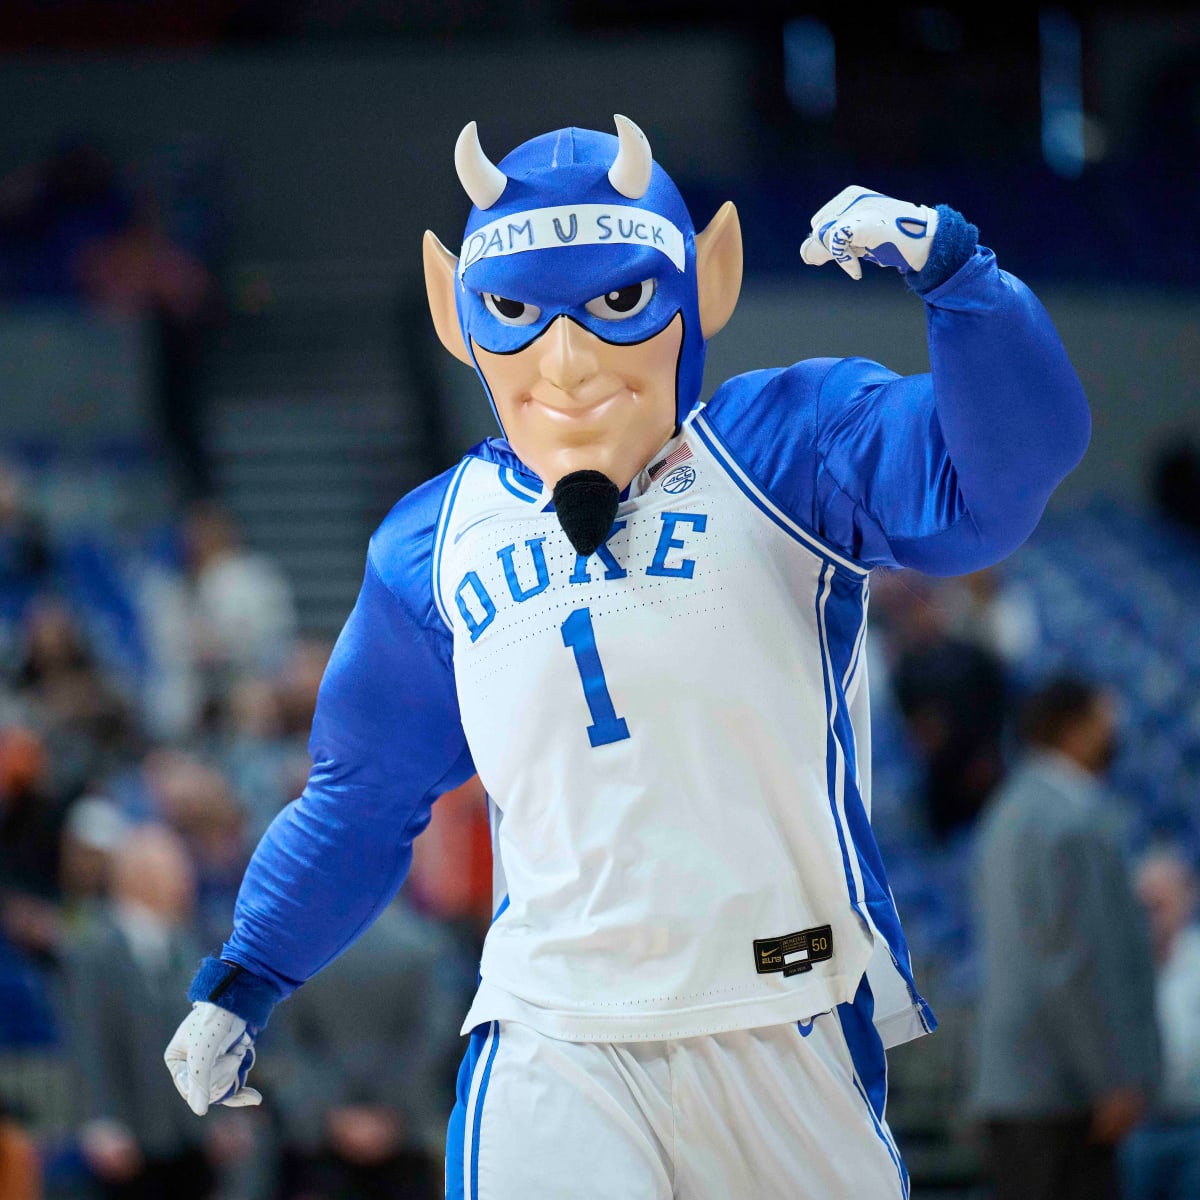 Duke Basketball Recruit Mixtape: 'Pledge Allegiance to the Flagg' - Sports  Illustrated Duke Blue Devils News, Analysis and More